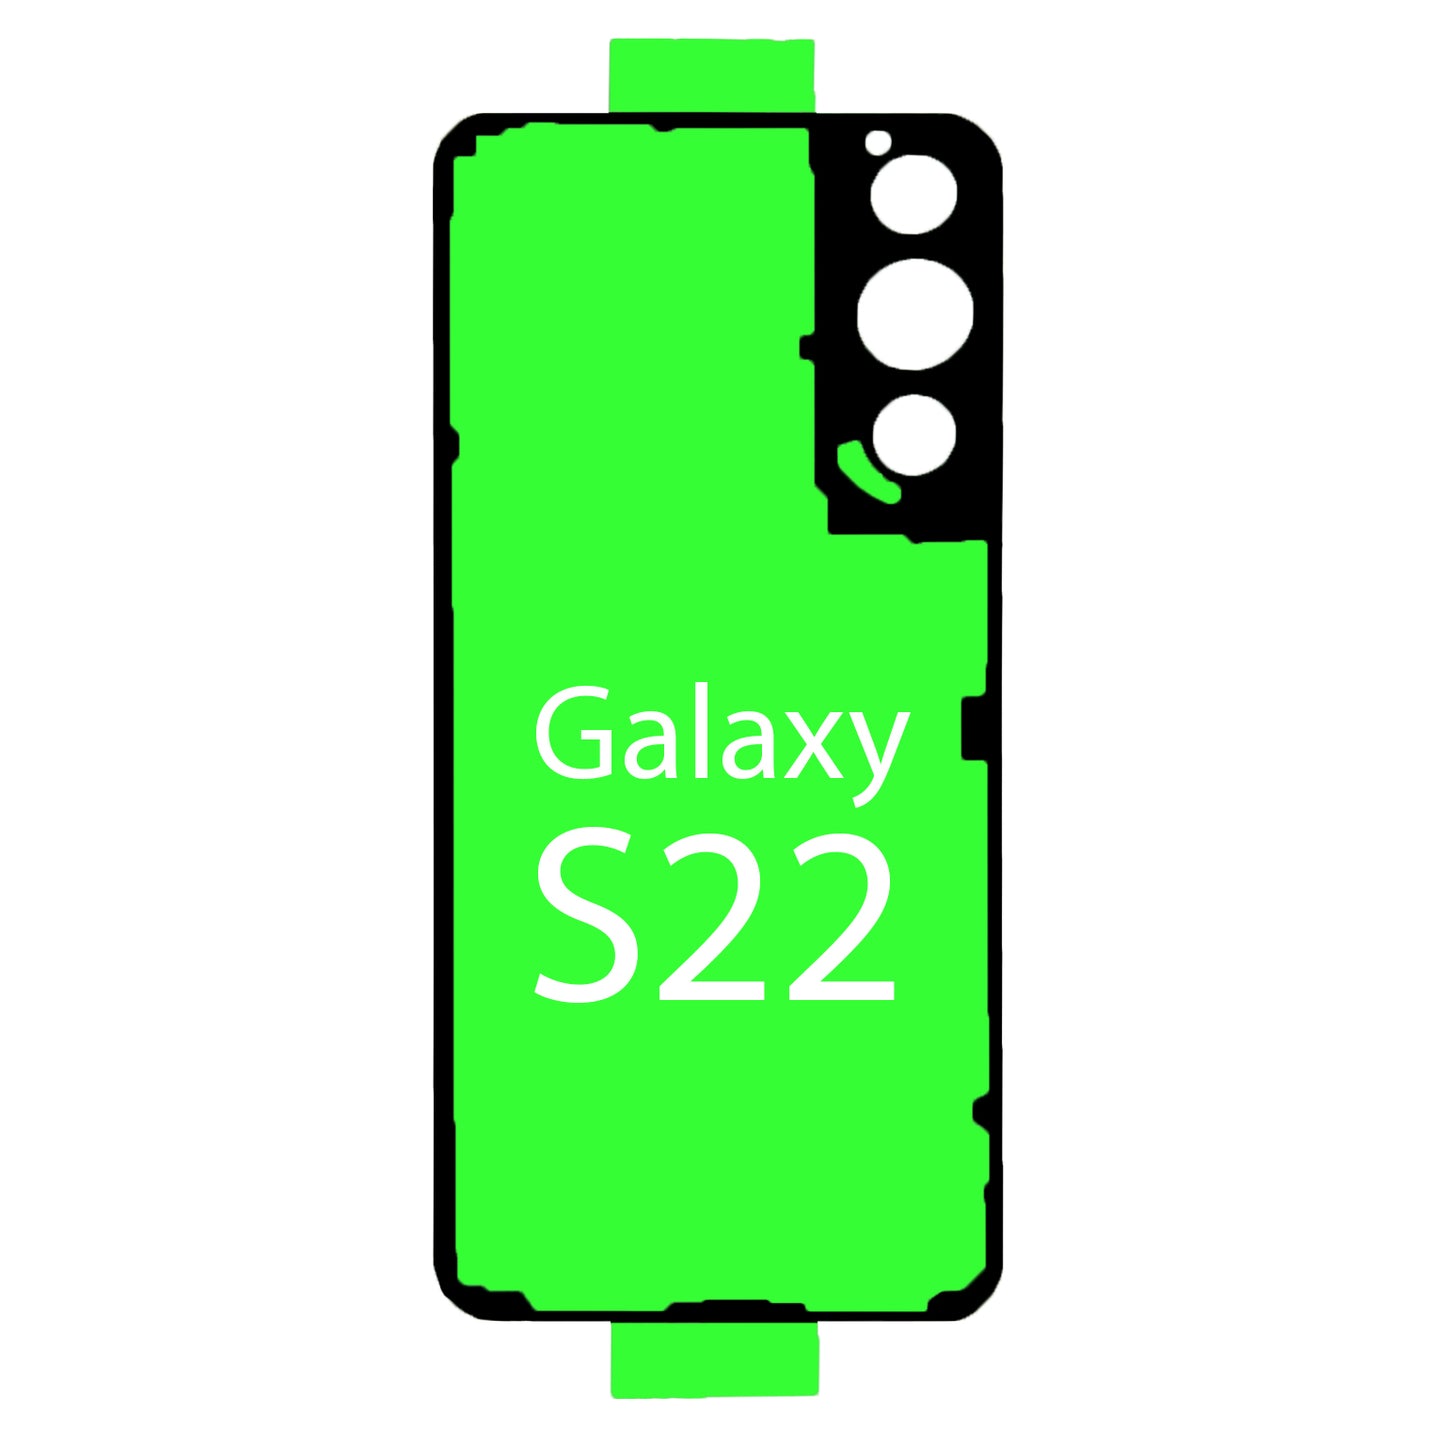 Samsung Galaxy S22 | Rahmen Kleber Klebepad Adhesive Wasser Dichtung Kleberahmen